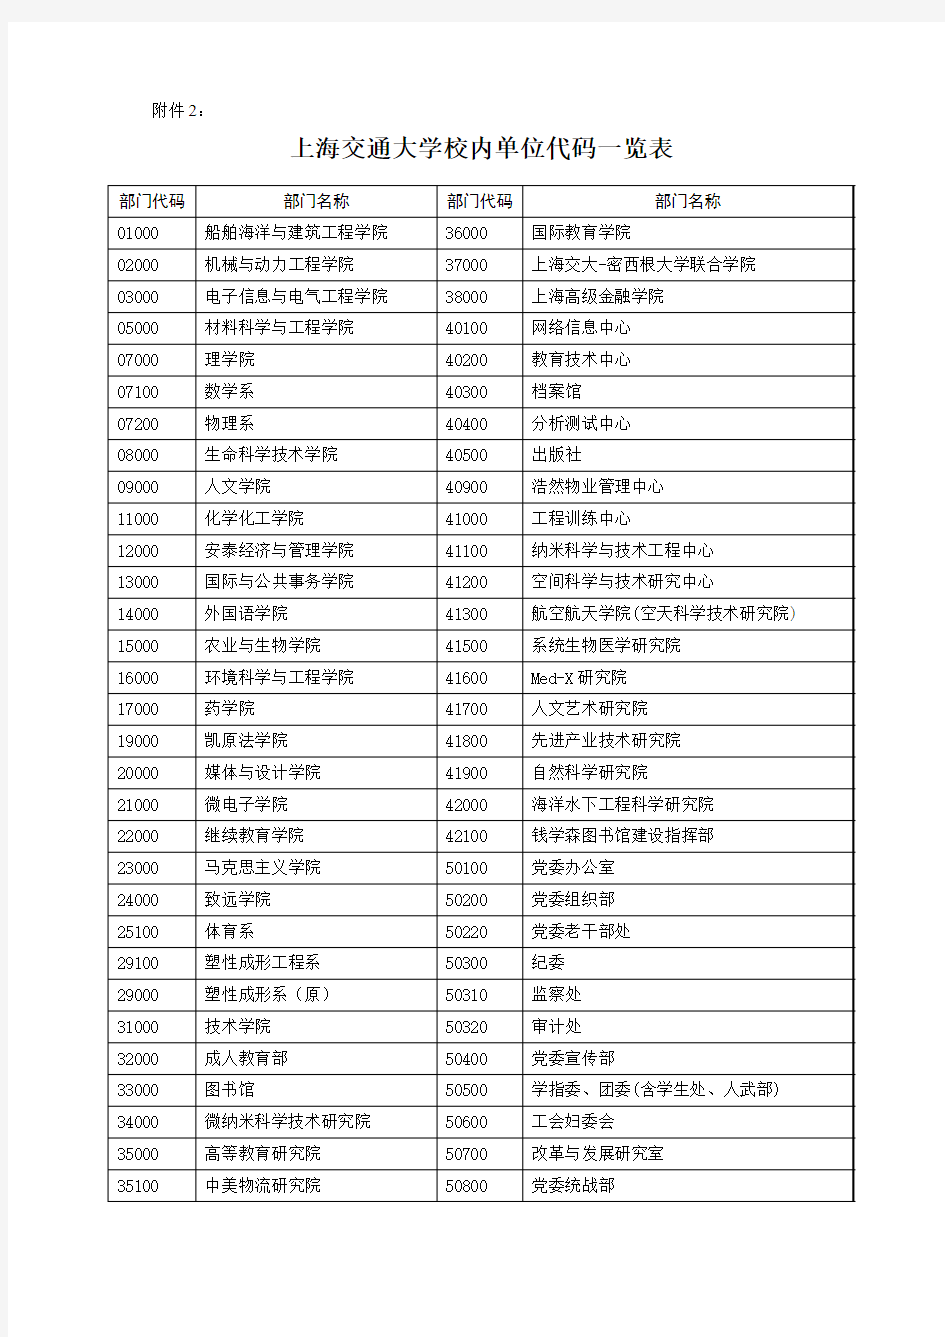 上海交通大学校内单位代码一览表